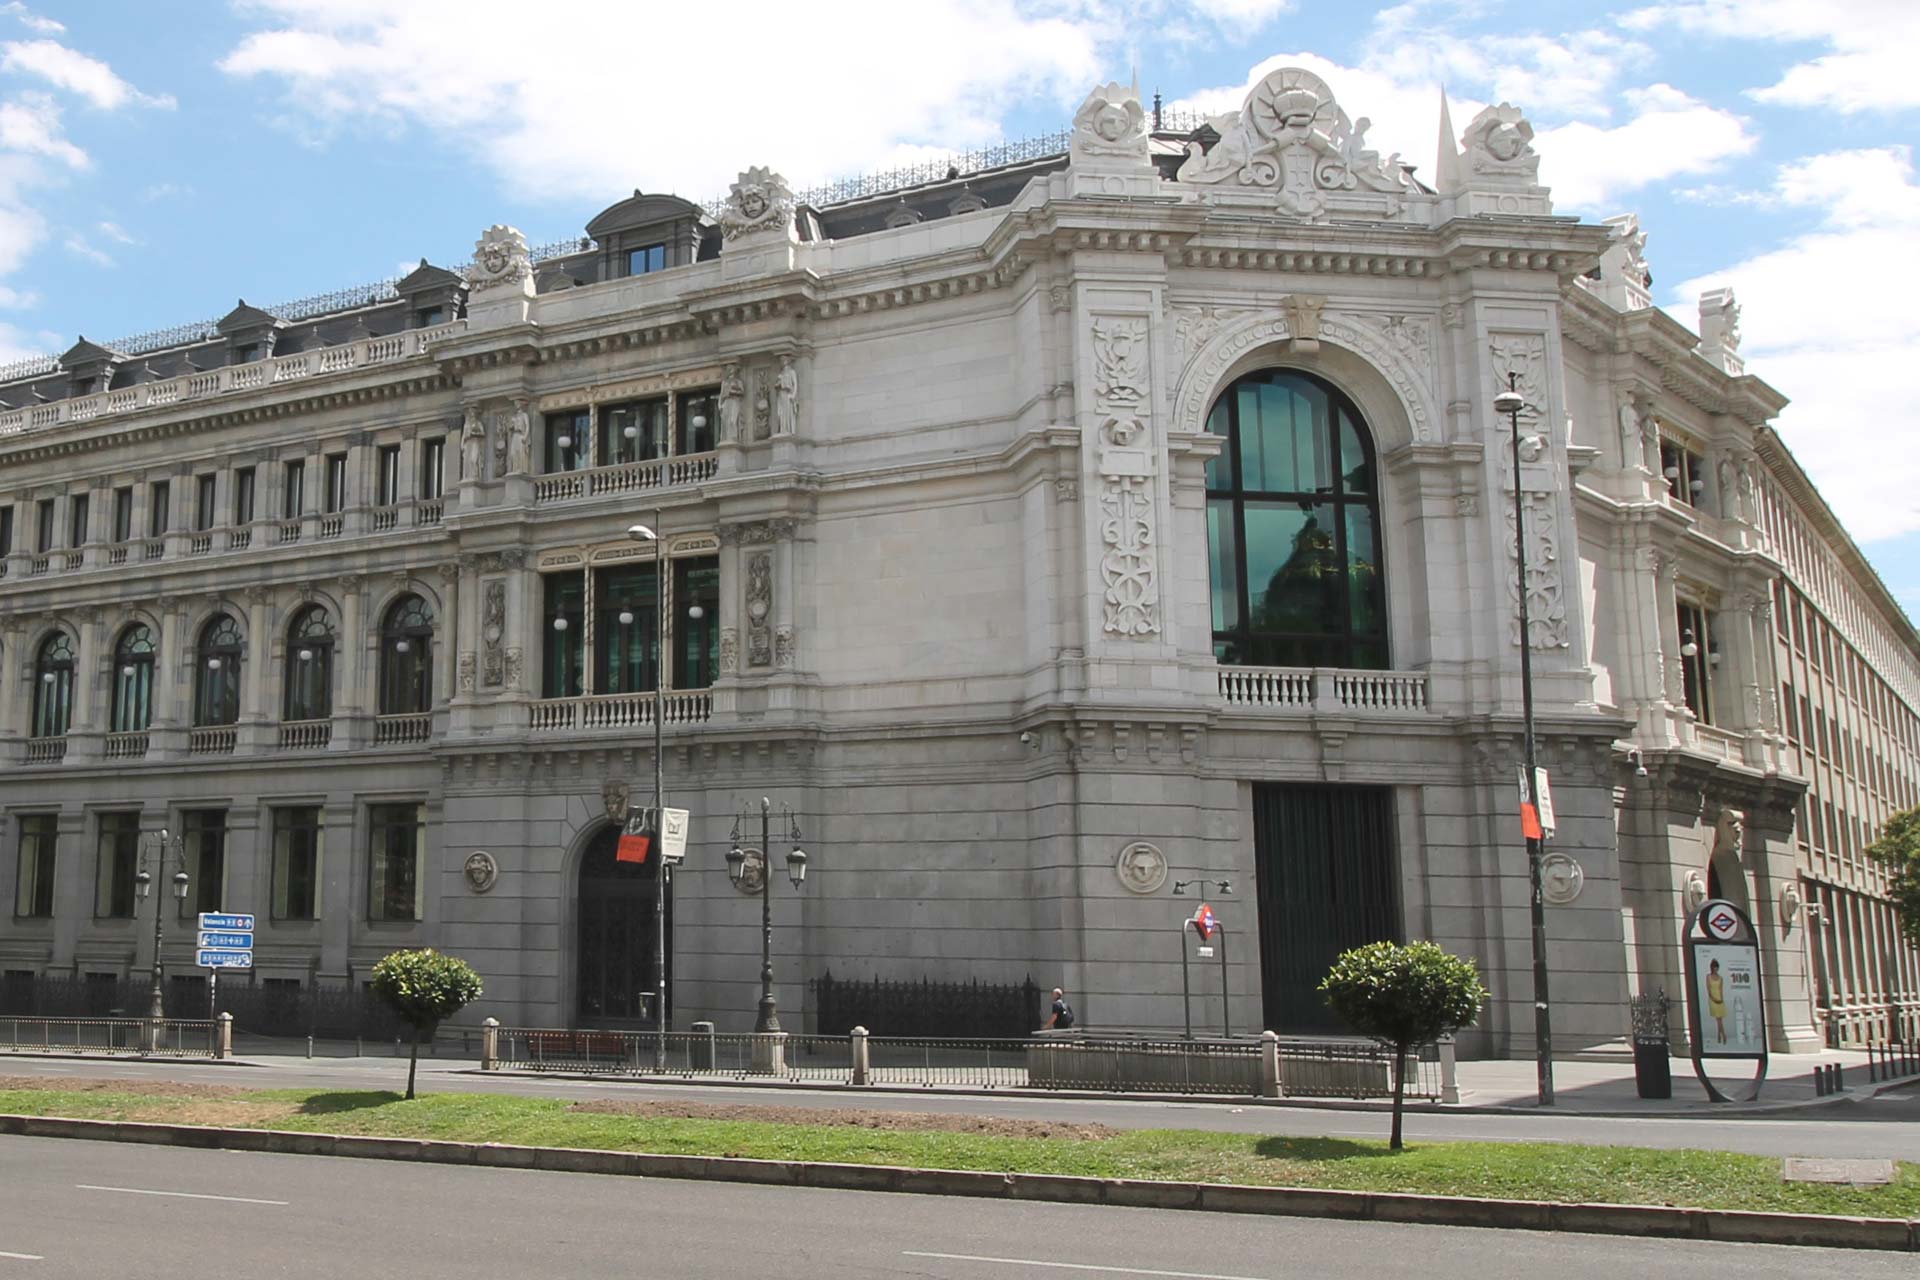 Prestamistas inmobiliarios, intermediarios de crédito y ECAs LPS tendrán acceso a la Central de información del Banco de España